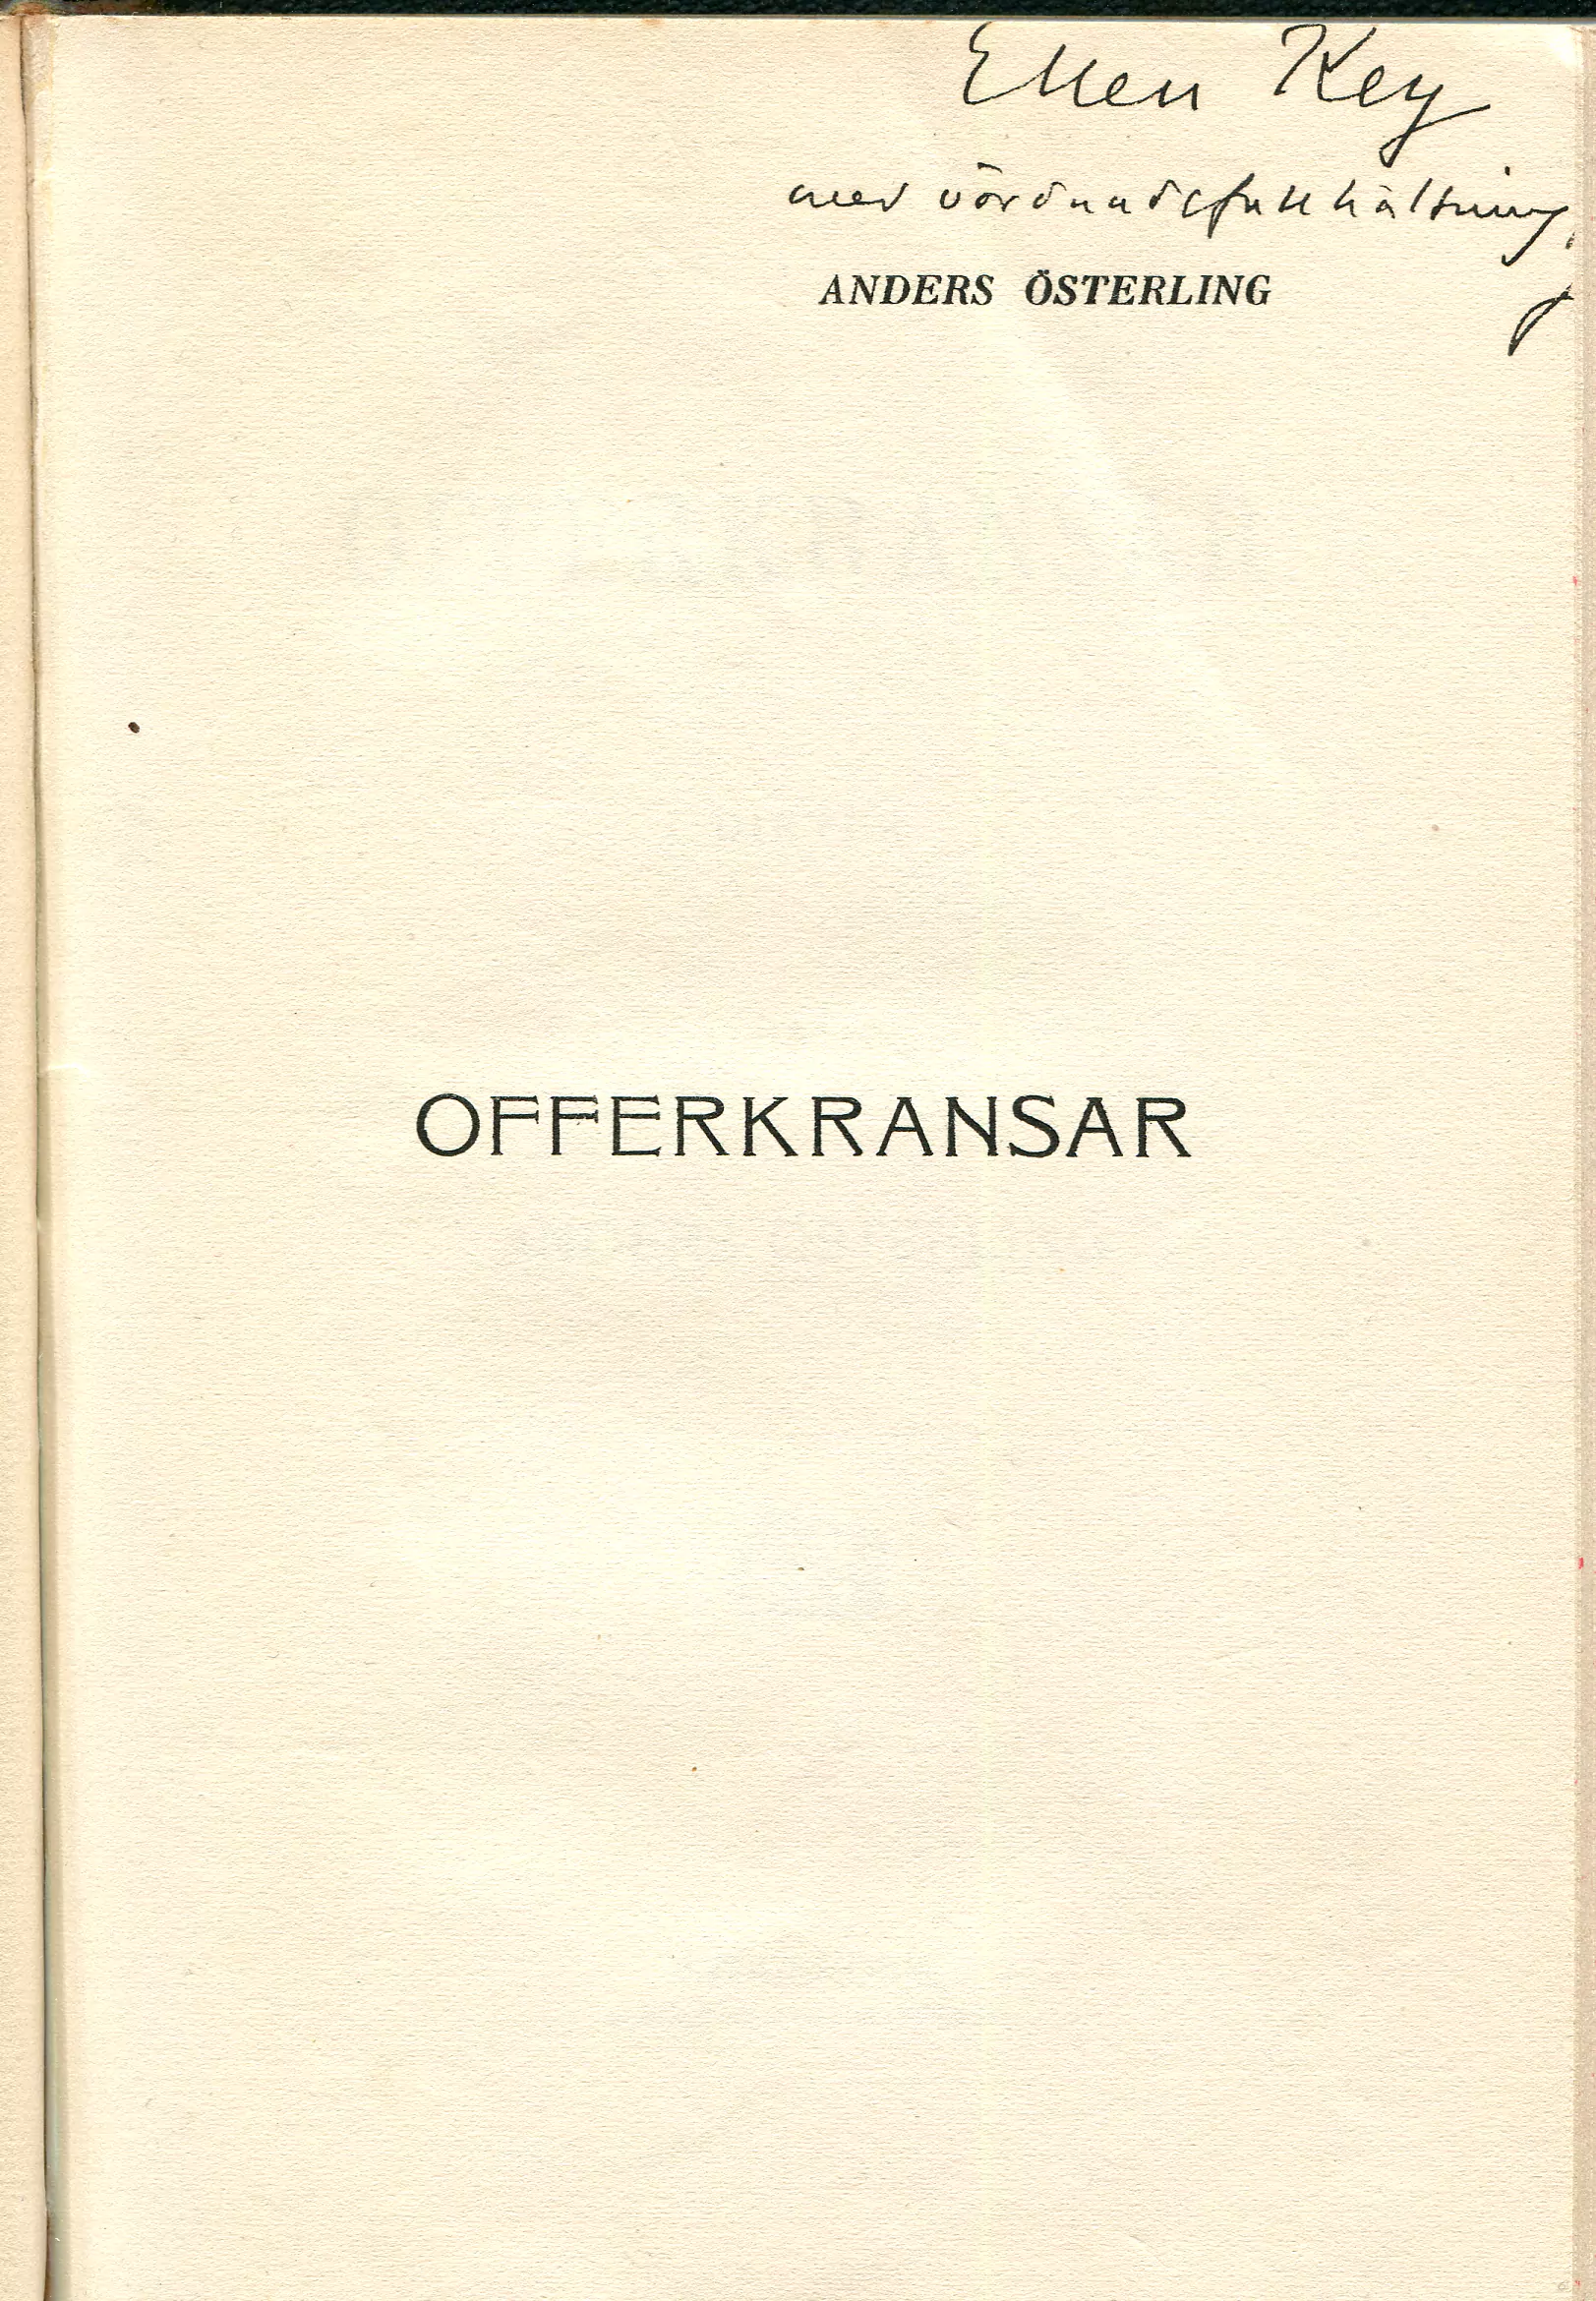 Offerkransar , Stockholm 1905